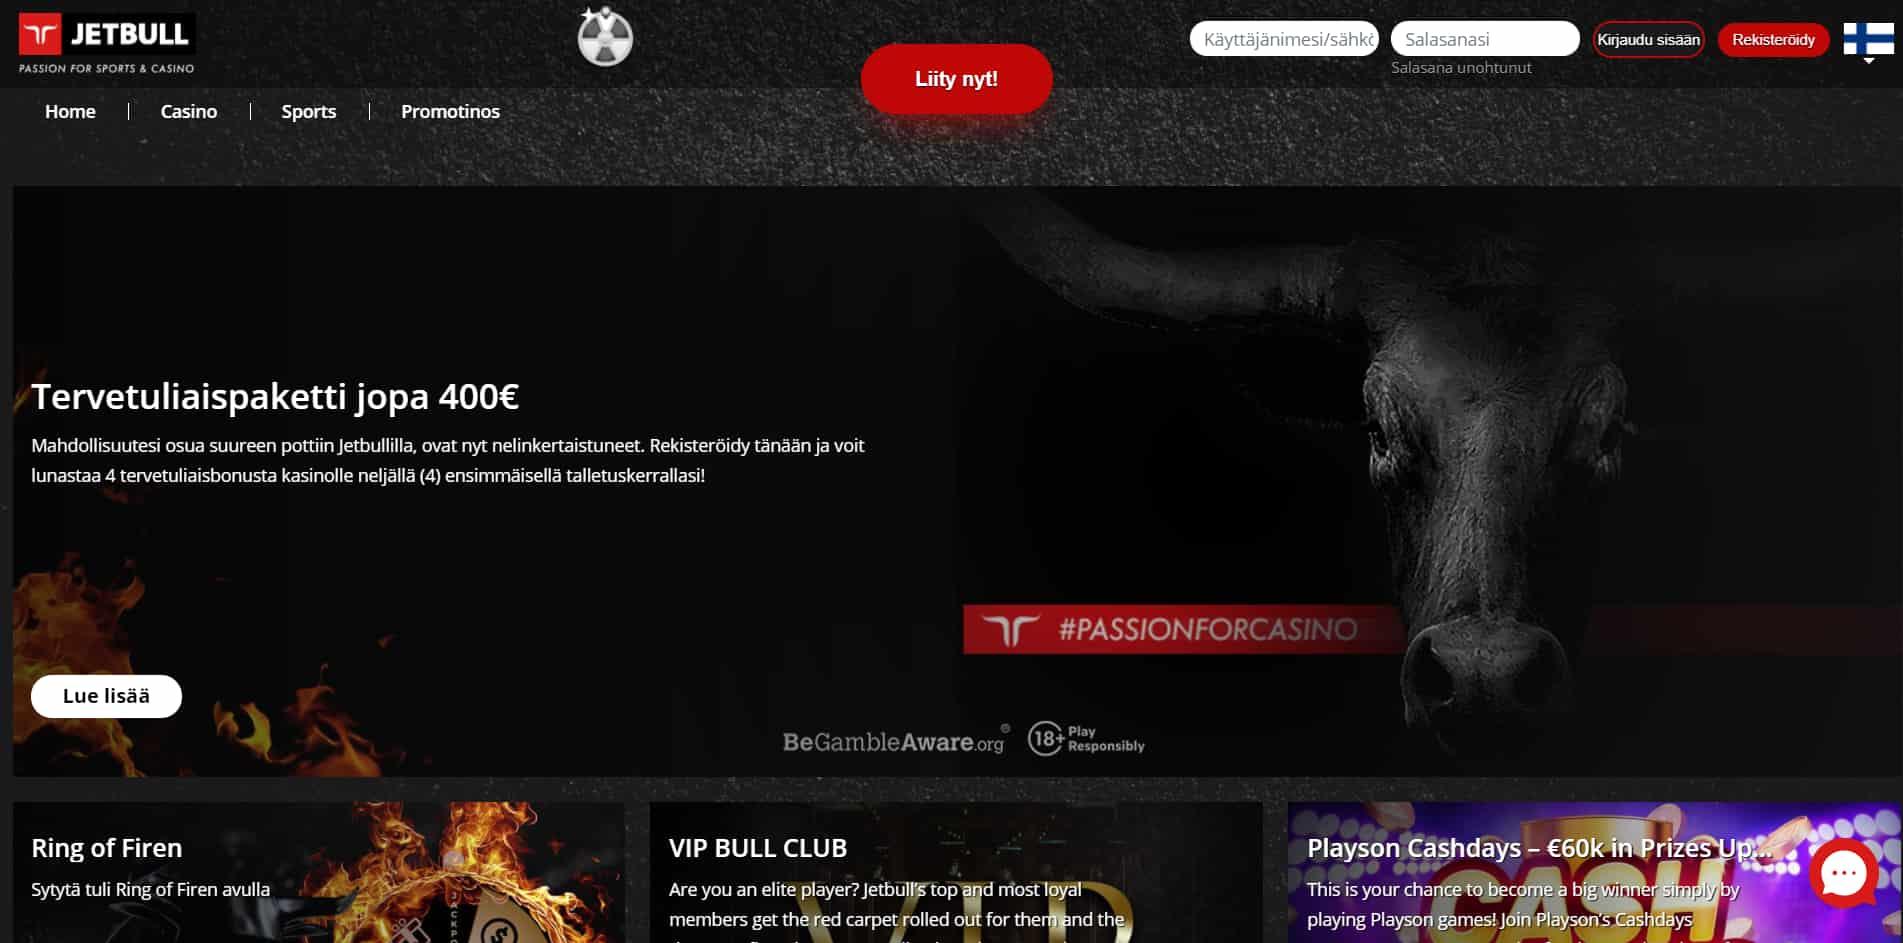 Jetbull casino homepage